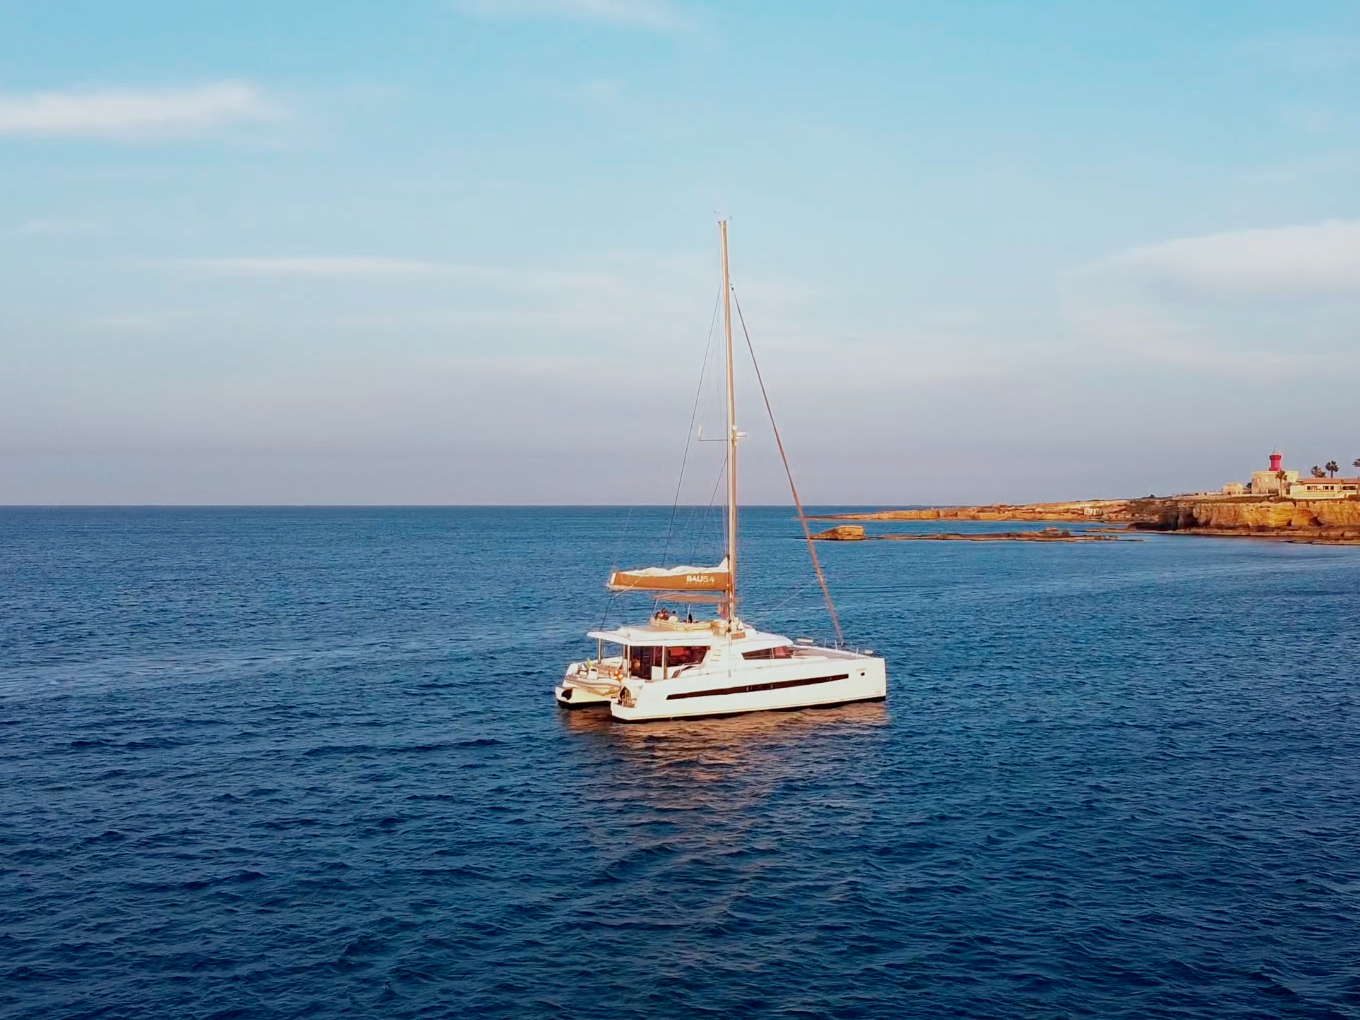 Bali 5.4 - Catamaran Charter Sicily & Boat hire in Italy Sicily Aeolian Islands Capo d'Orlando Capo d'Orlando Marina 2